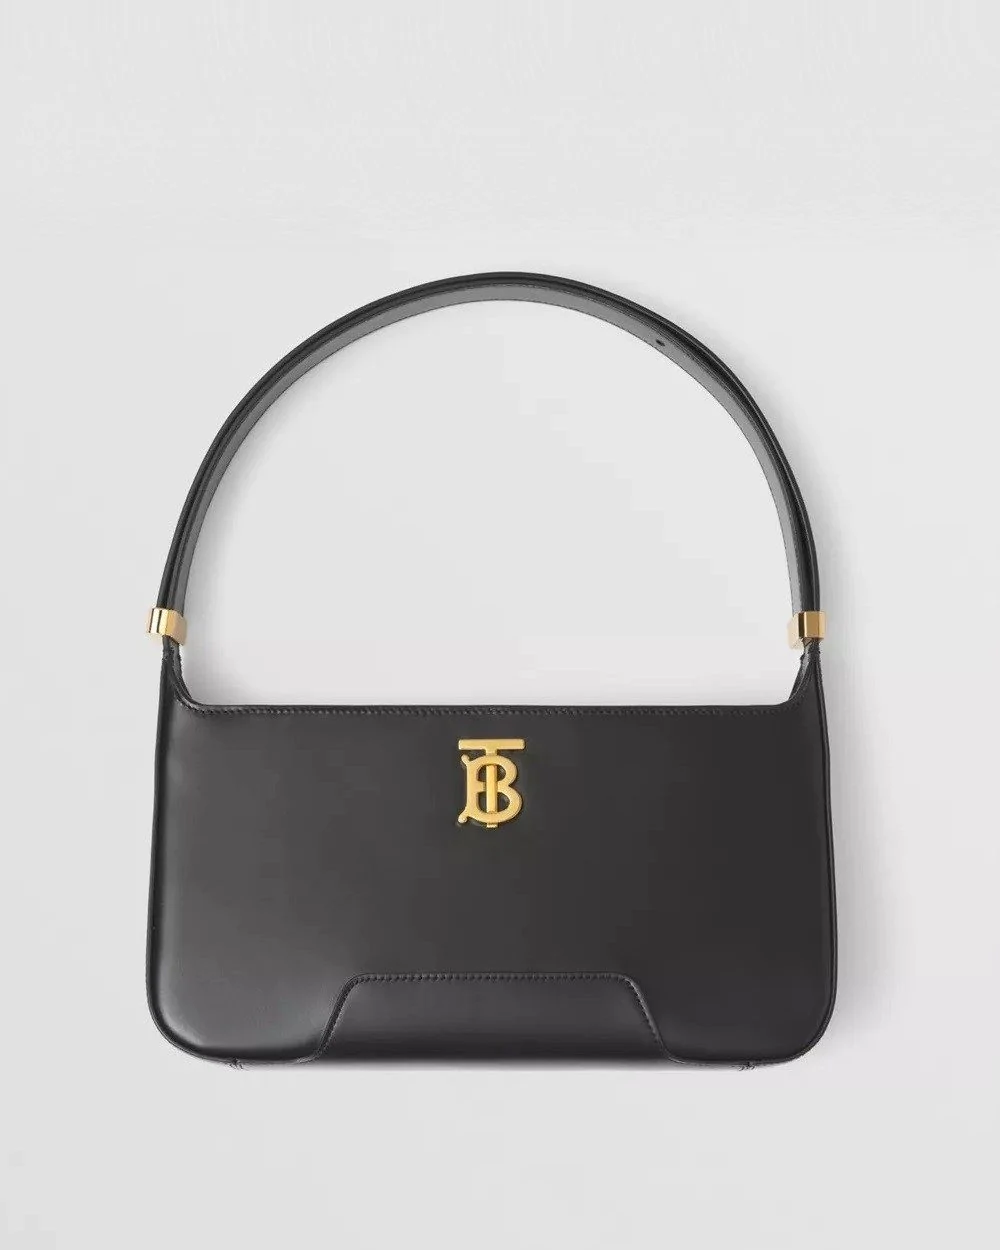 Burberry Black Leather TB Shoulder Bag